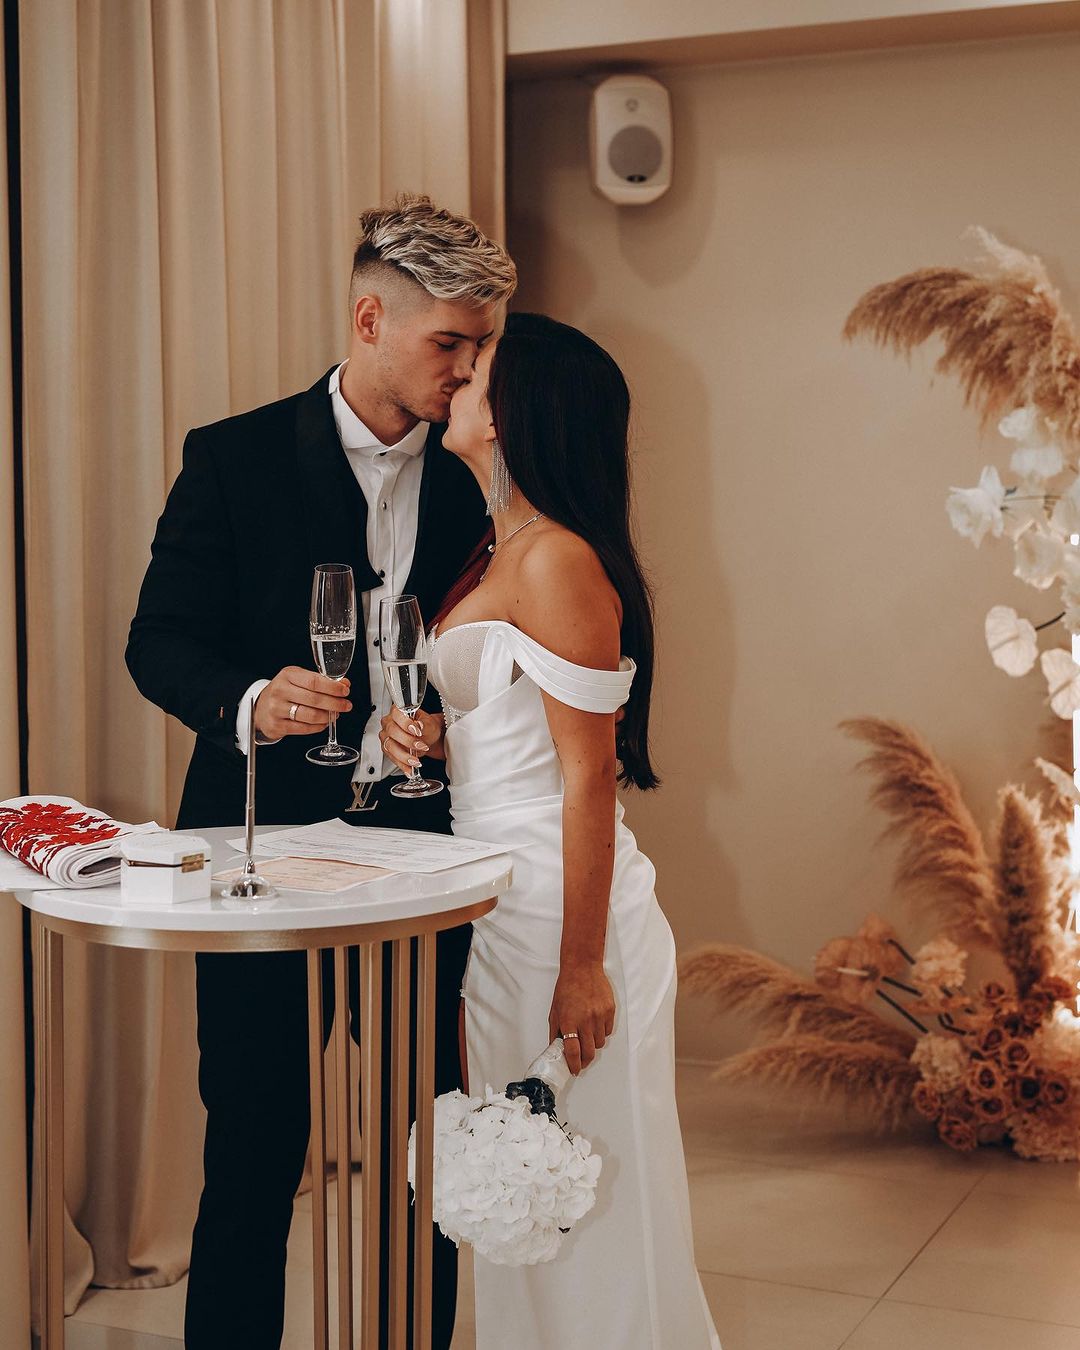 Анна Тринчер и Александр Волошин отметили первую годовщину свадьбы